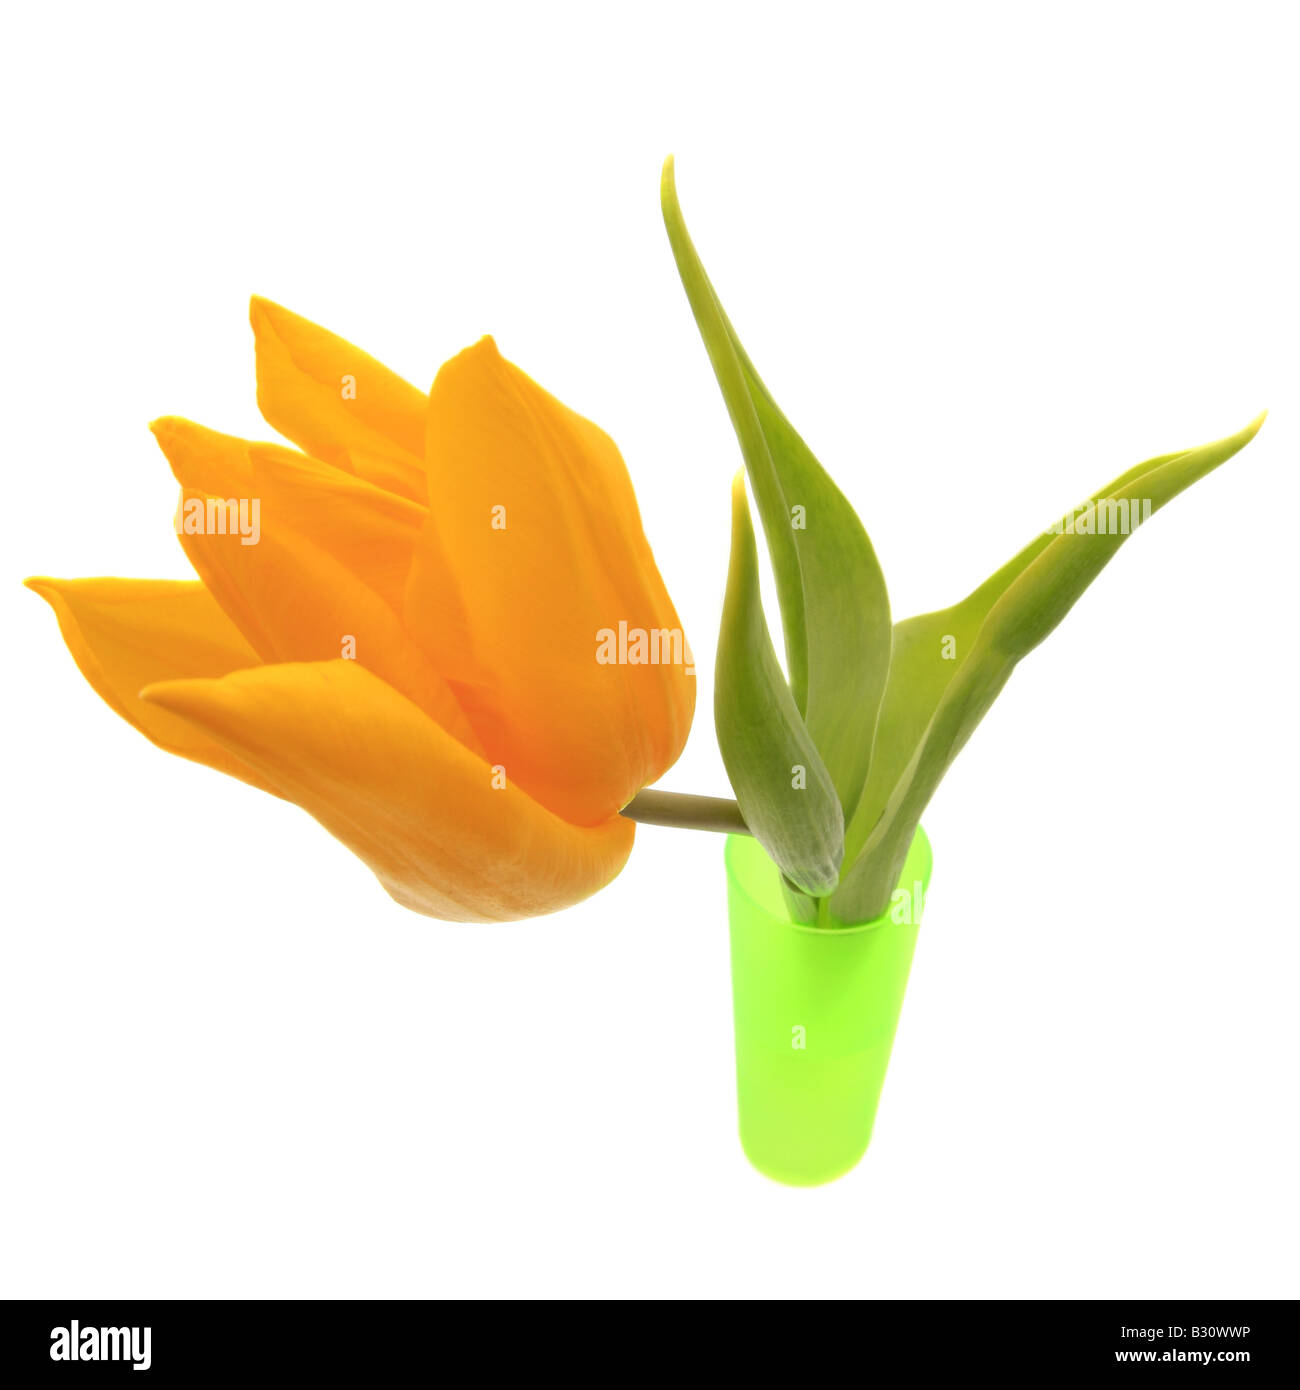 Tulipa gesneriana, common garden tulip Stock Photo